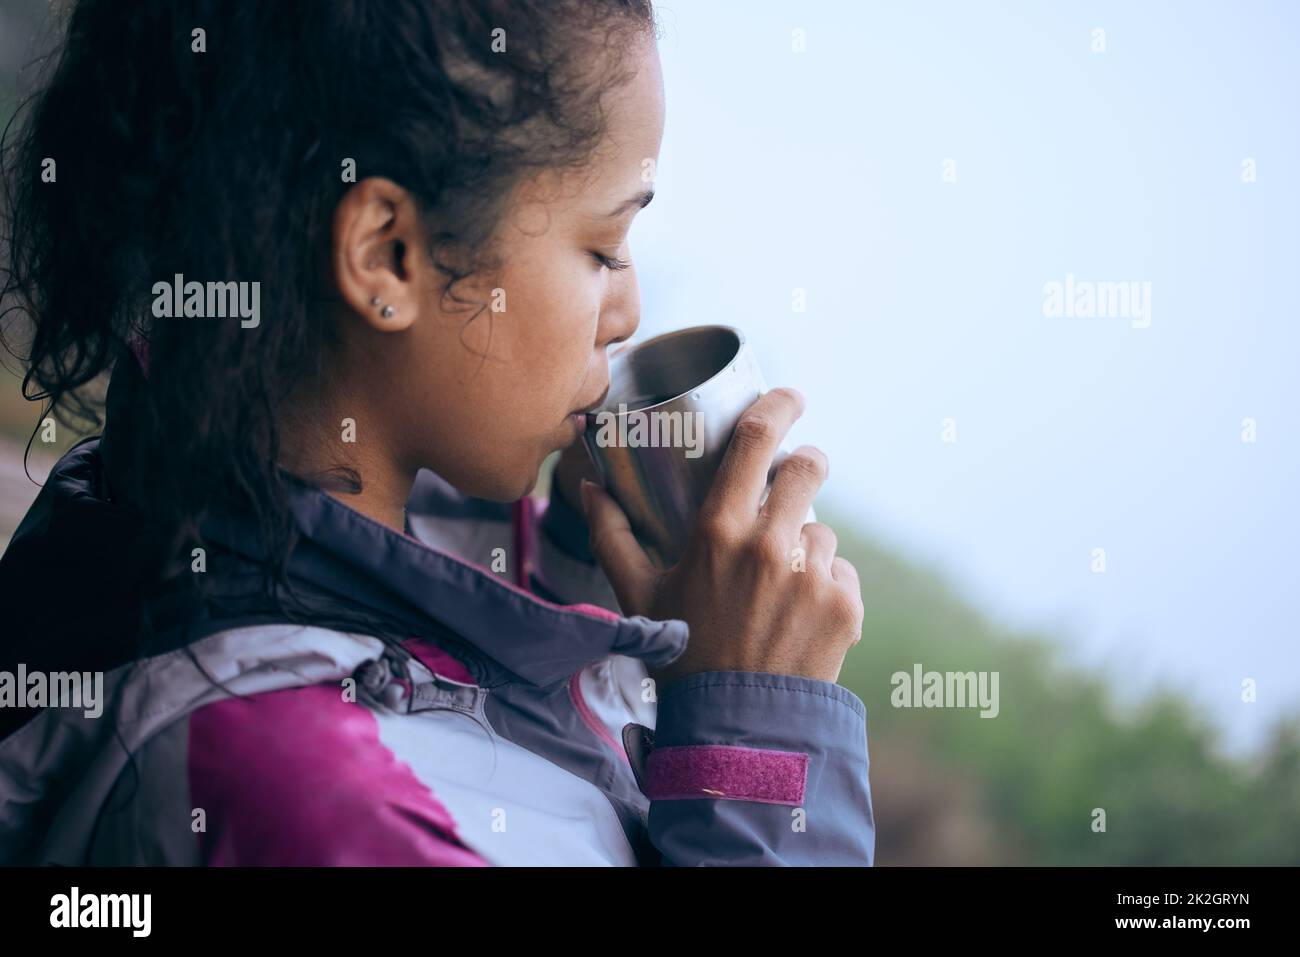 Le pause caffè sono necessarie durante le escursioni mattutine. Un colpo corto di una giovane donna attraente che beve caffè mentre fa una pausa durante la sua escursione di mattina presto. Foto Stock